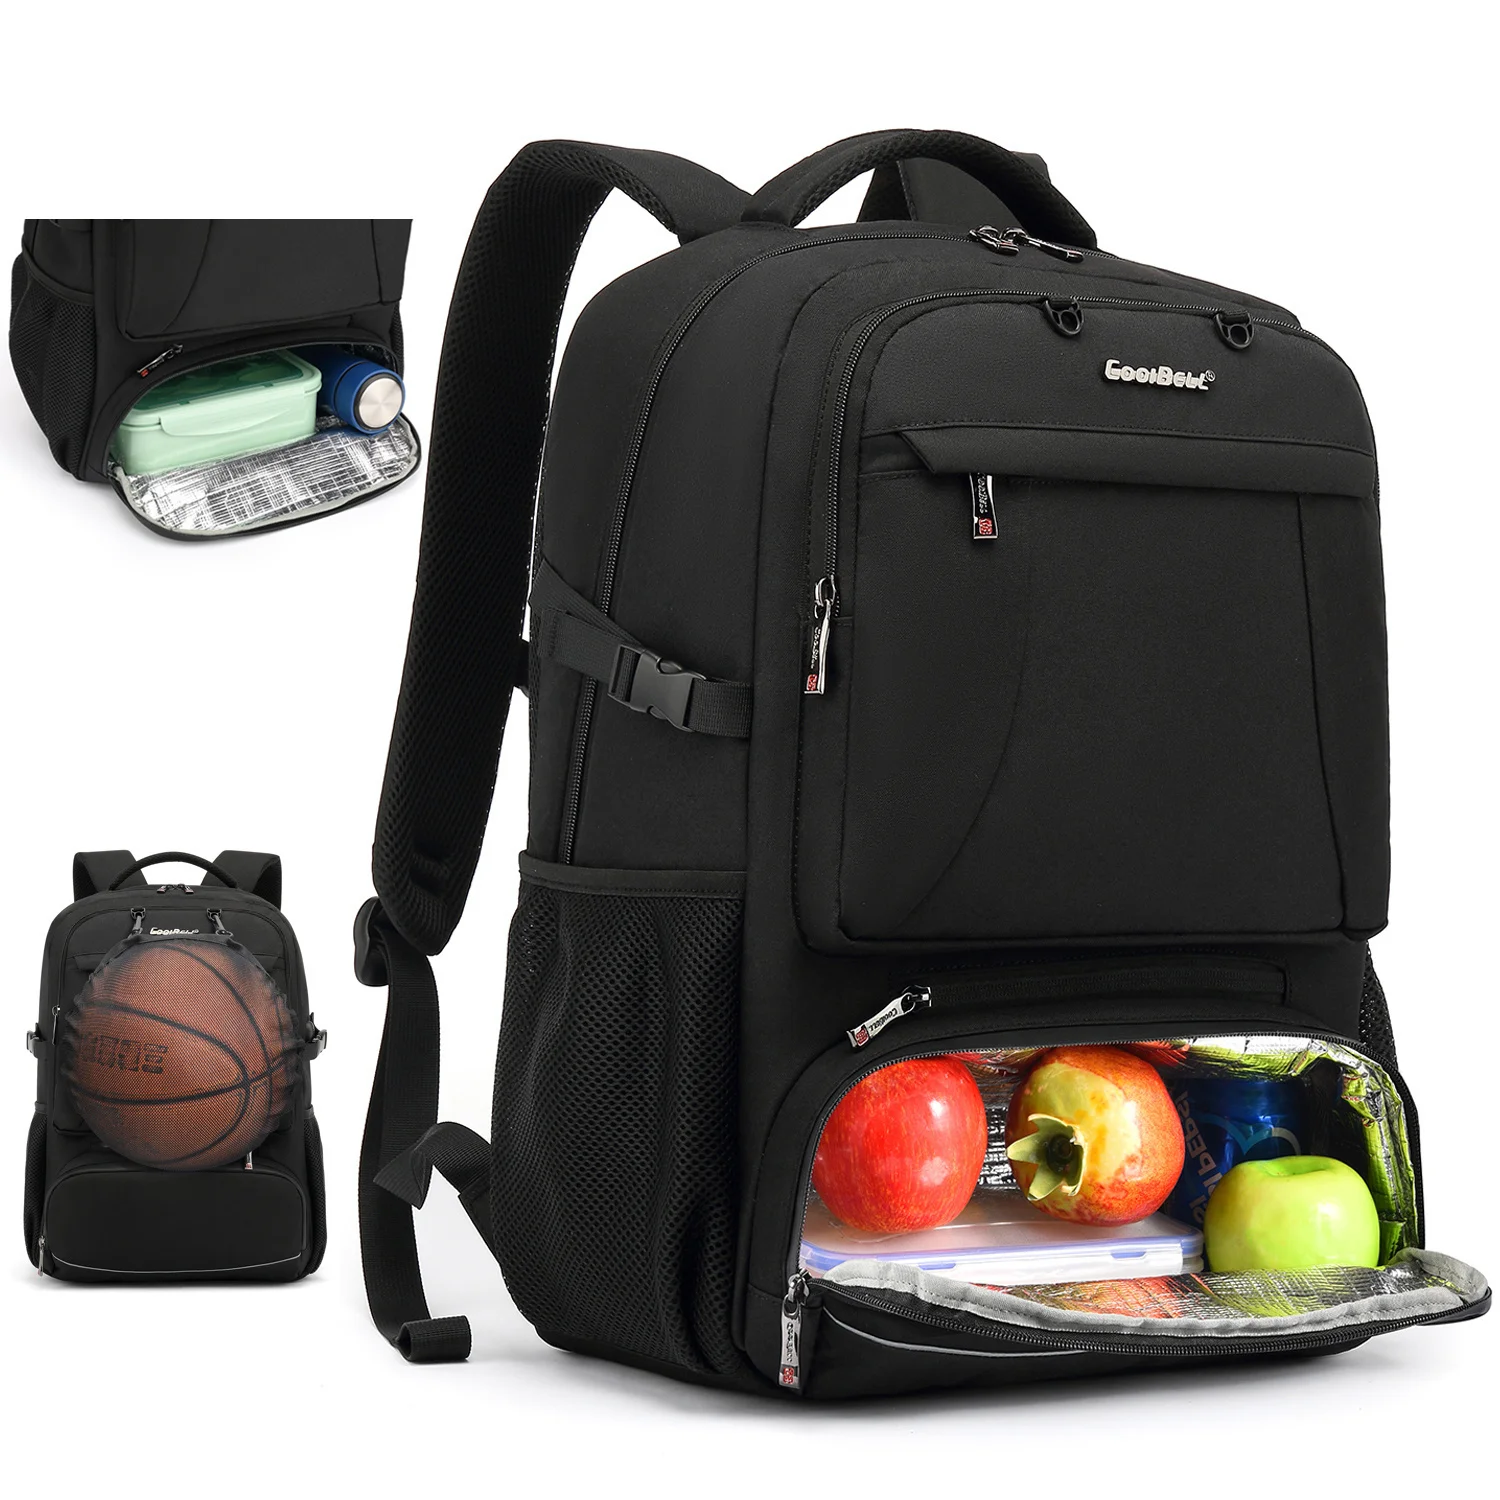 

Рюкзак с отделением для ноутбука 15,6/17,3 дюймов и USB-портом